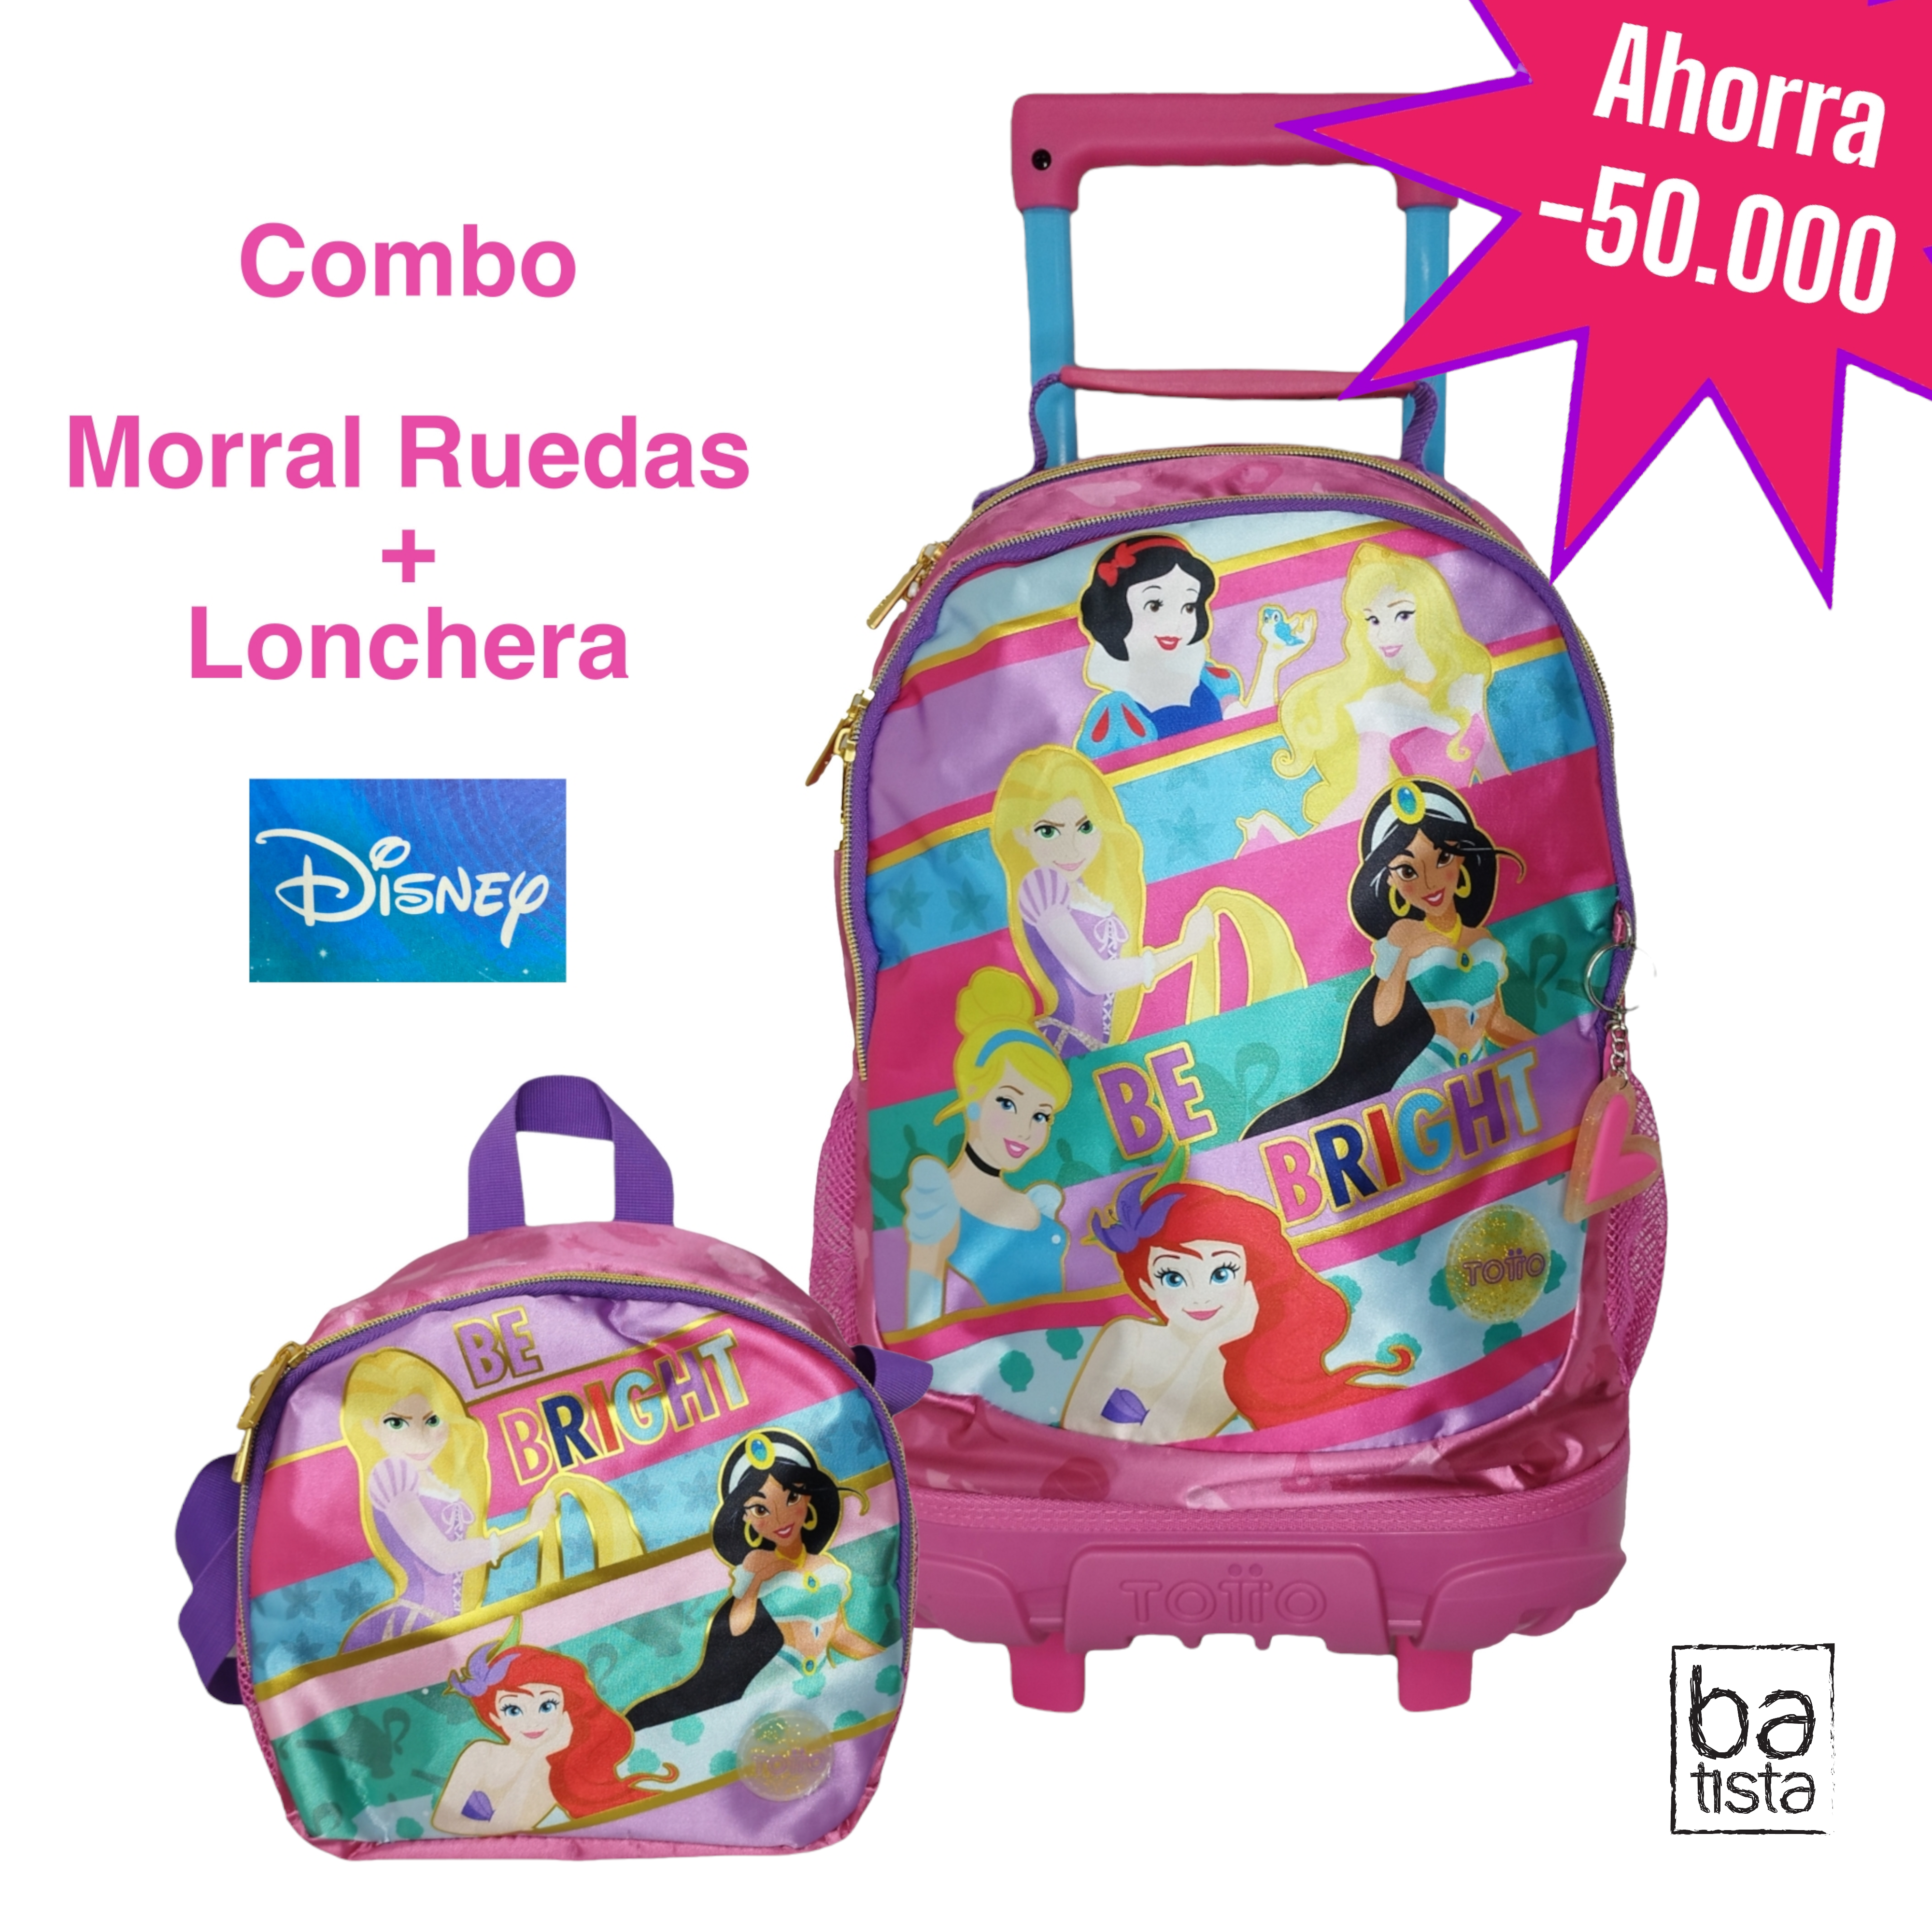 Combo Morral con Ruedas Totto Team Princess